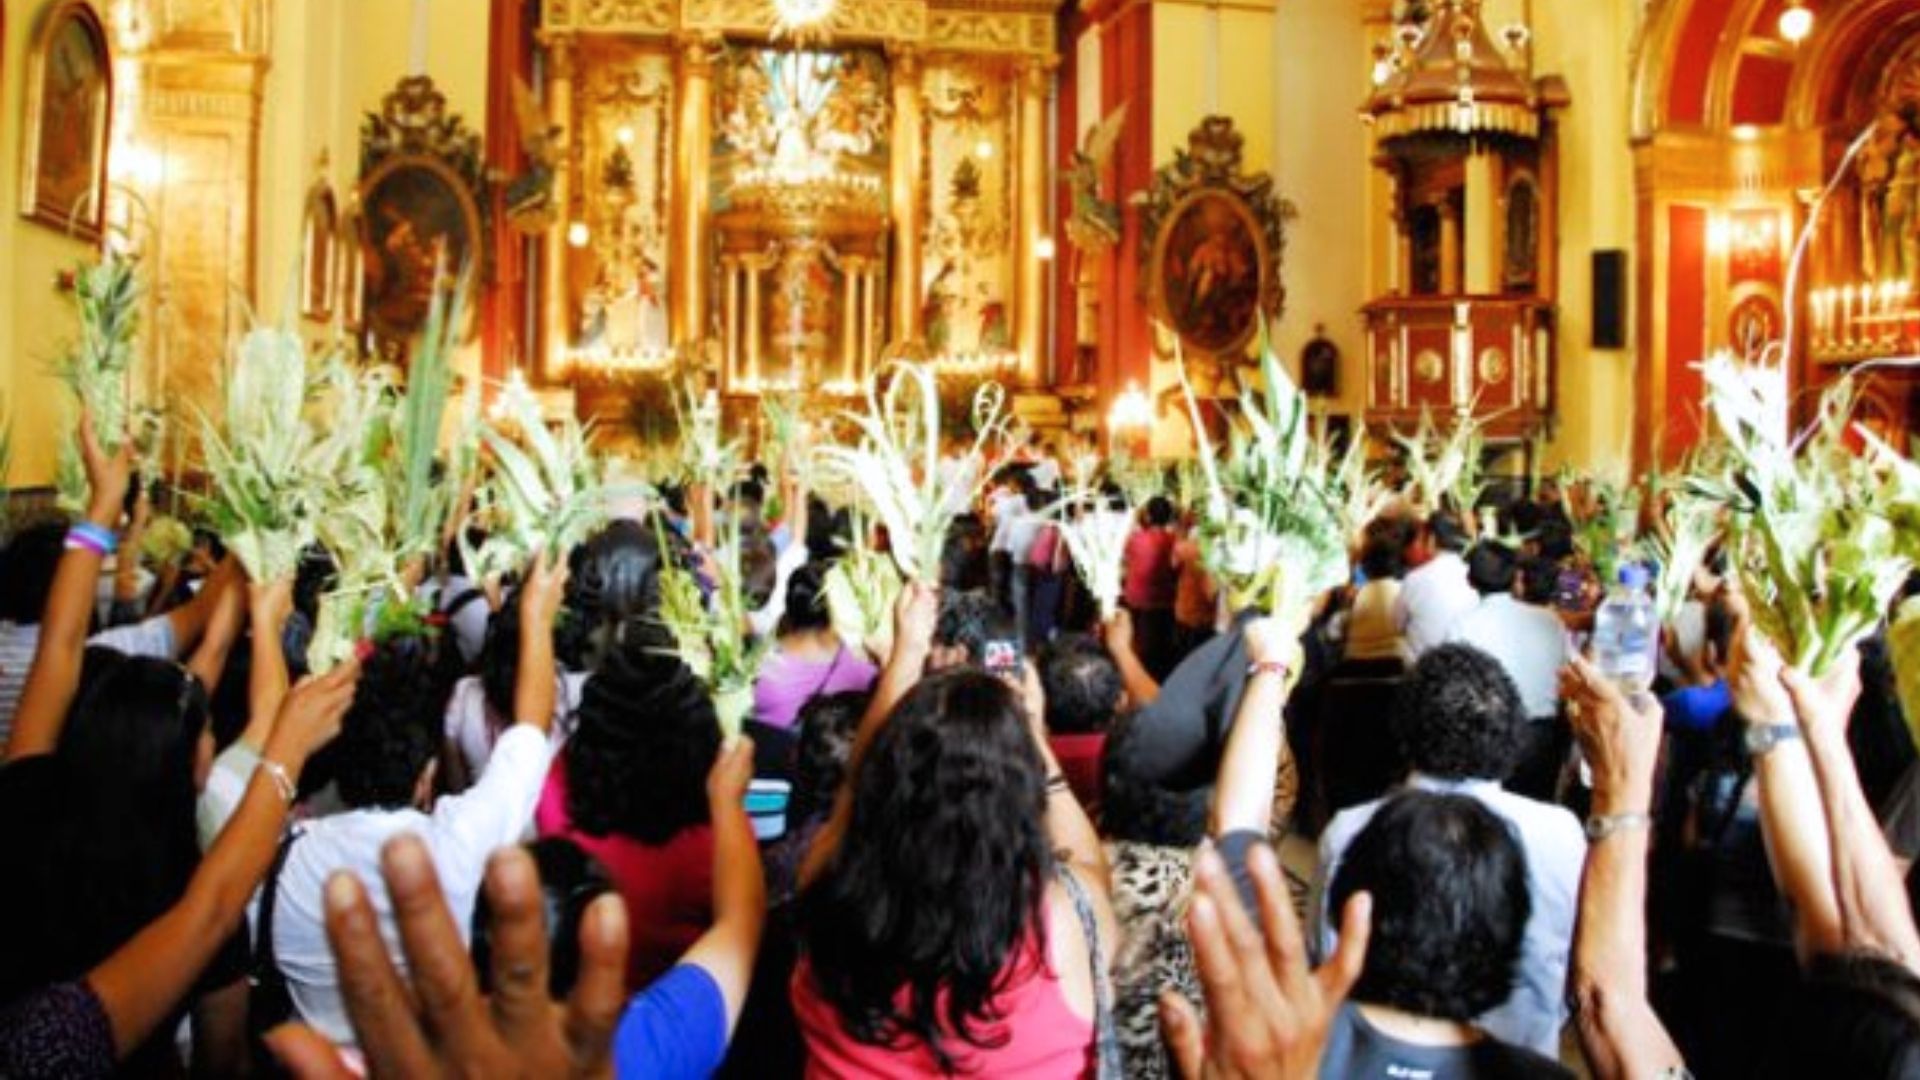 Ramo de olivo en Semana Santa: qué significado tiene y por qué se lleva en Domingo de Ramos - Infobae